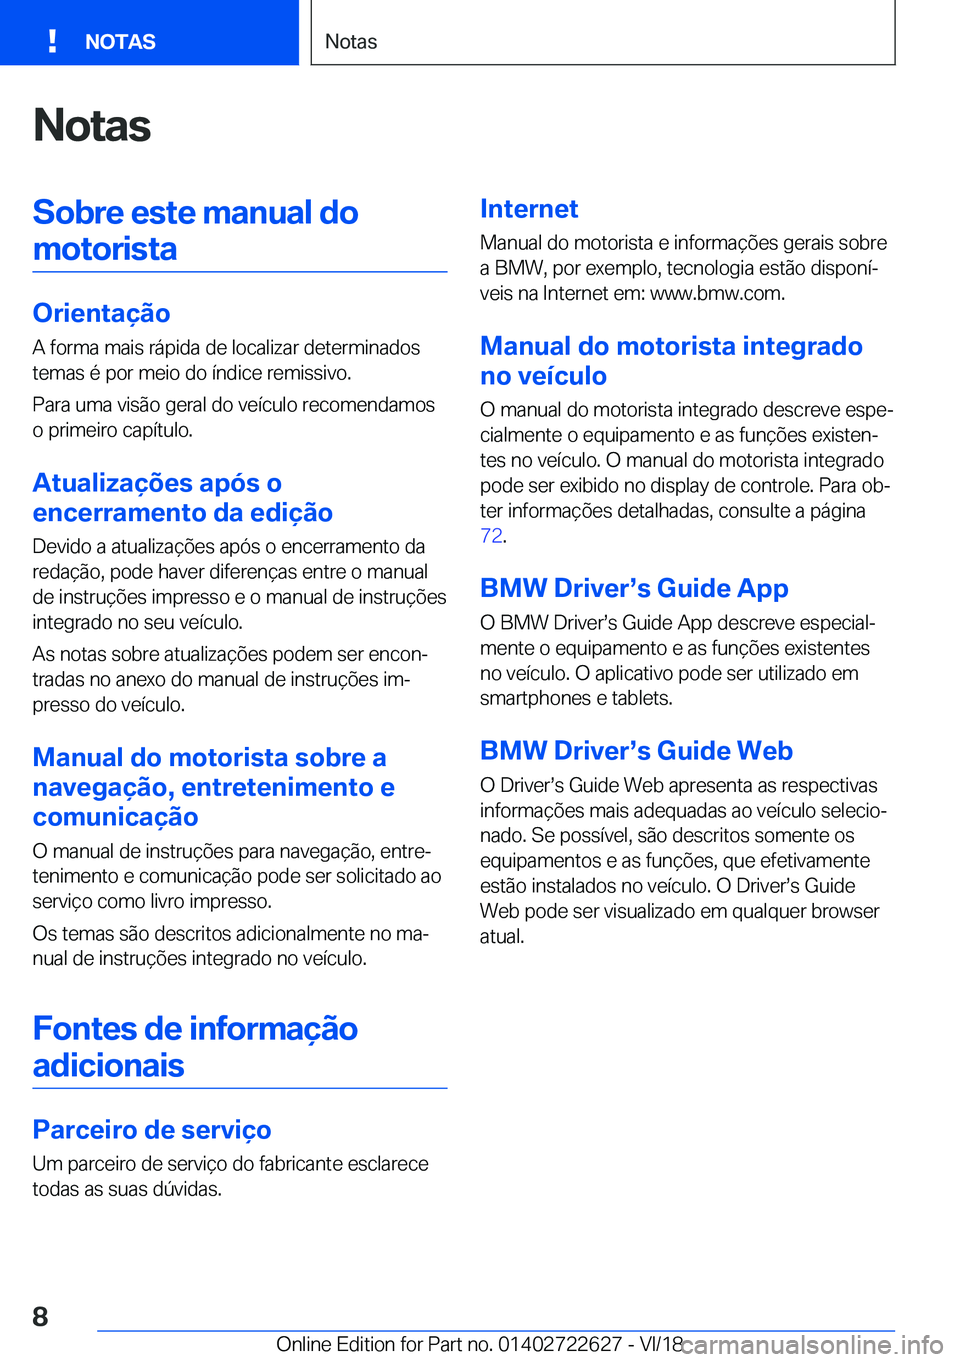 BMW 5 SERIES 2019  Manual do condutor (in Portuguese) �N�o�t�a�s�S�o�b�r�e��e�s�t�e��m�a�n�u�a�l��d�o�m�o�t�o�r�i�s�t�a
�O�r�i�e�n�t�a�